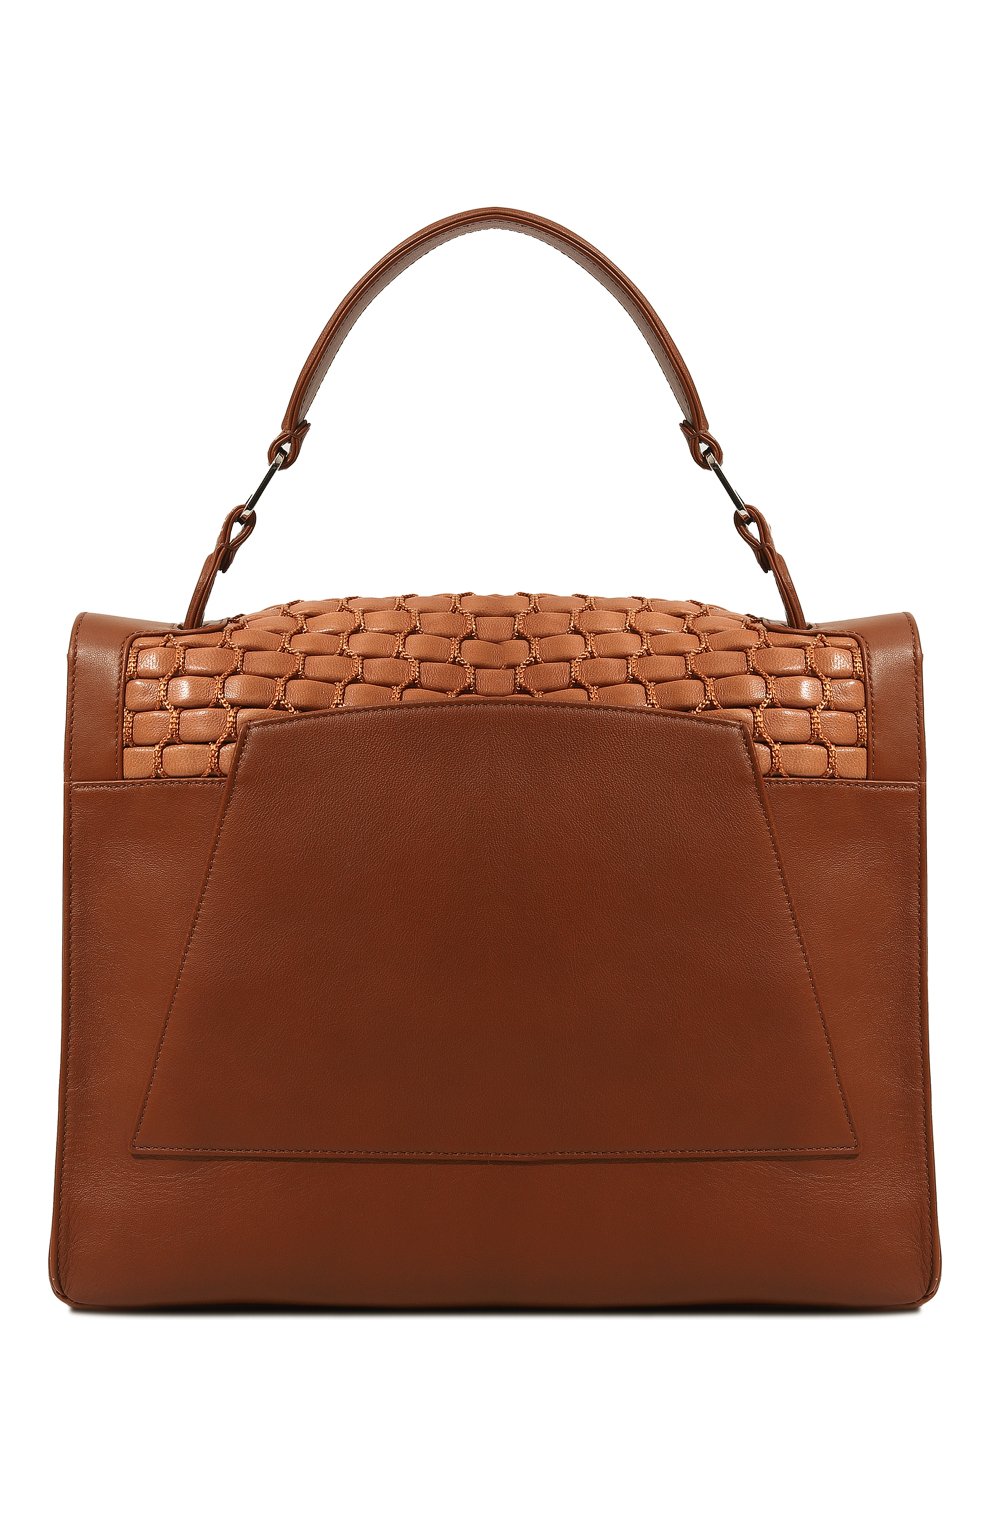 Женская сумка lunch bag RODO коричневого цвета, арт. B8615/869 | Фото 7 (Сумки-технические: Сумки top-handle; Размер: medium; Материал: Натуральная кожа)